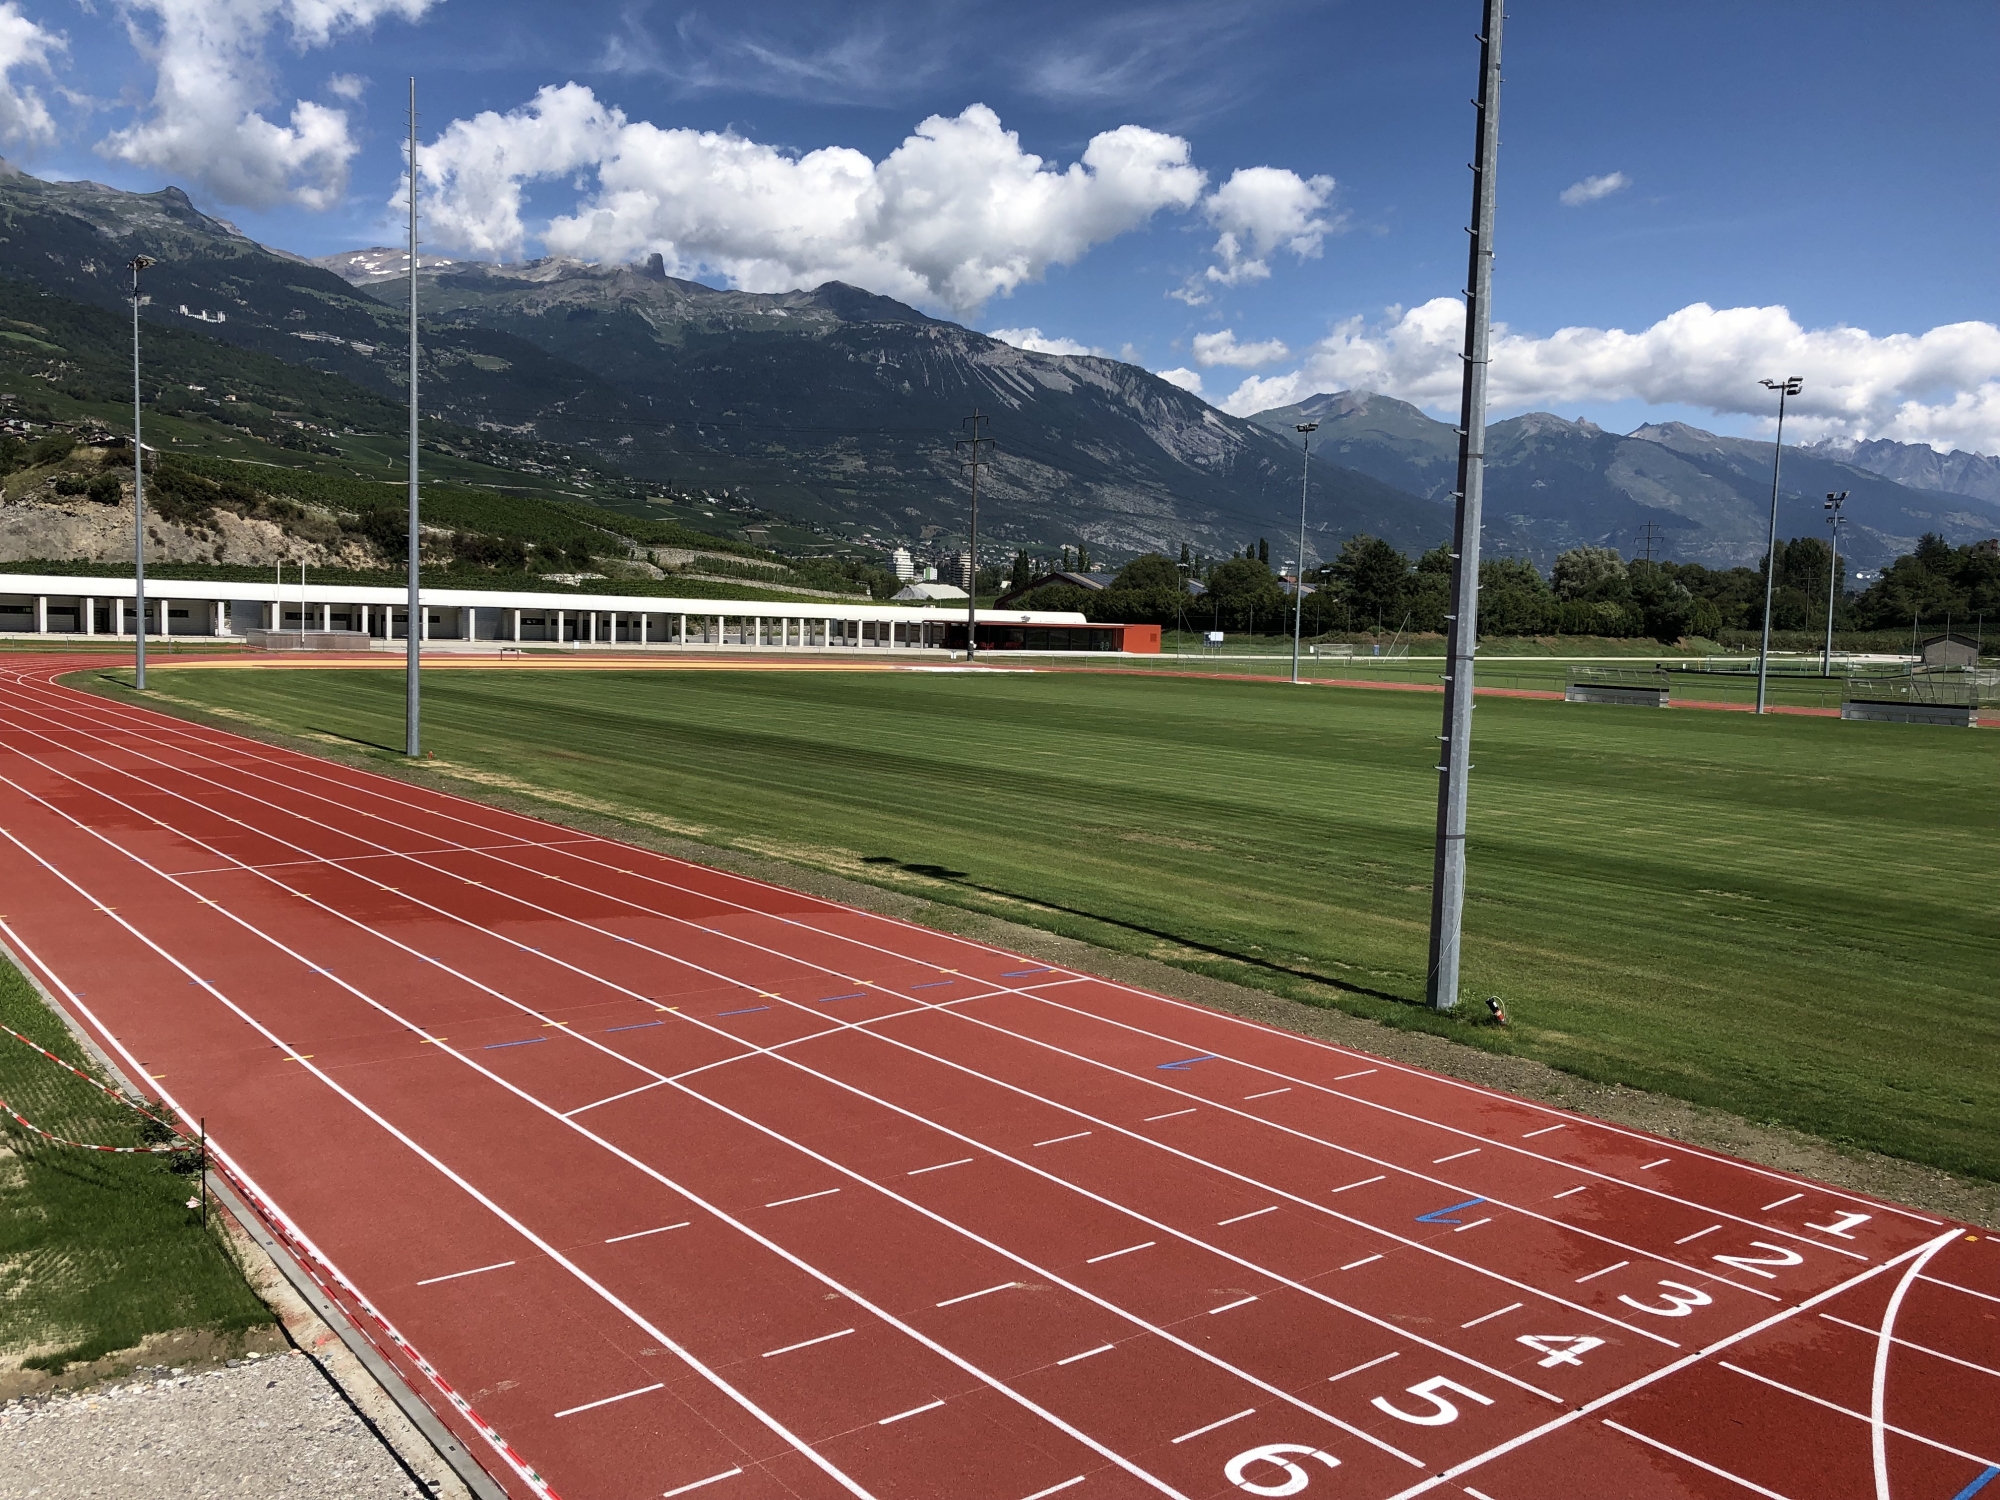 Une piste d'athlétisme longue de 400 mètres a été ajoutée au complexe sportif d'Ecossia, à Sierre. L'éclairage du site doit encore être finalisé.